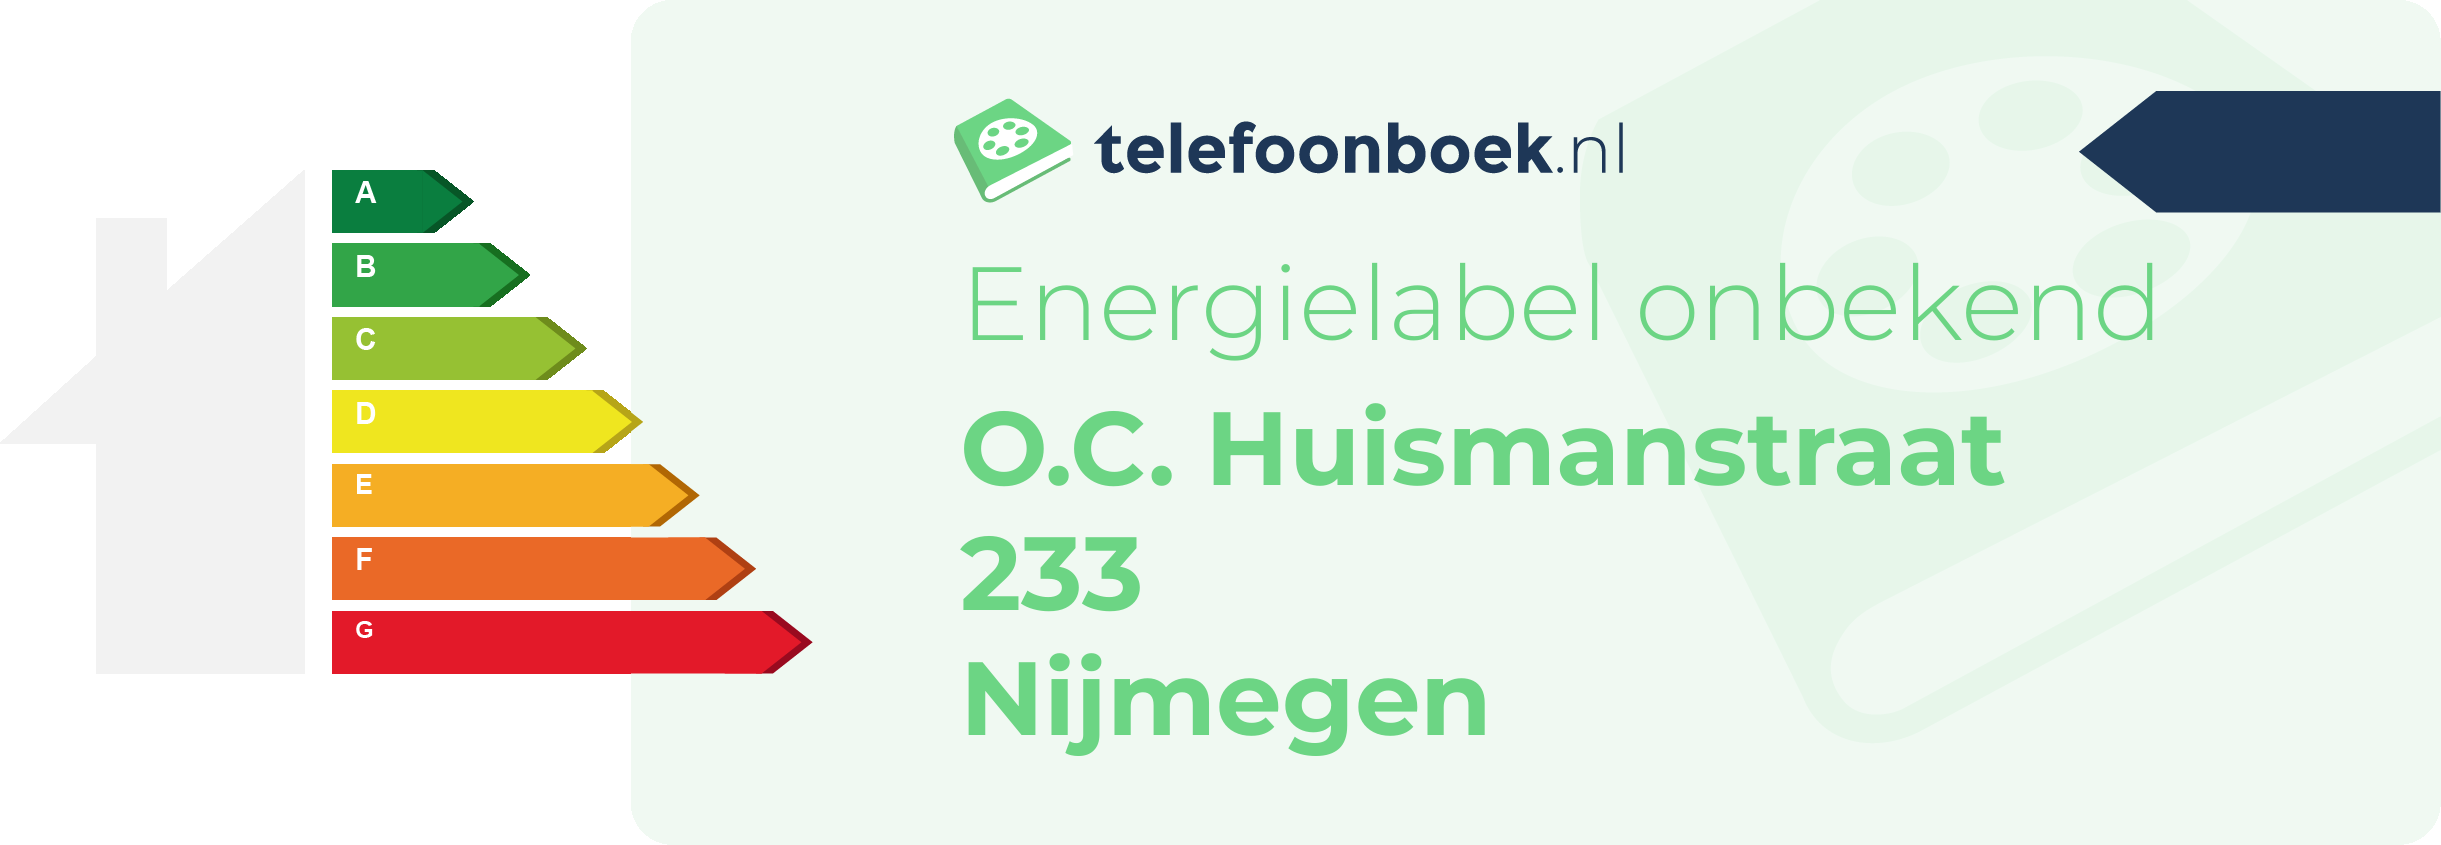 Energielabel O.C. Huismanstraat 233 Nijmegen